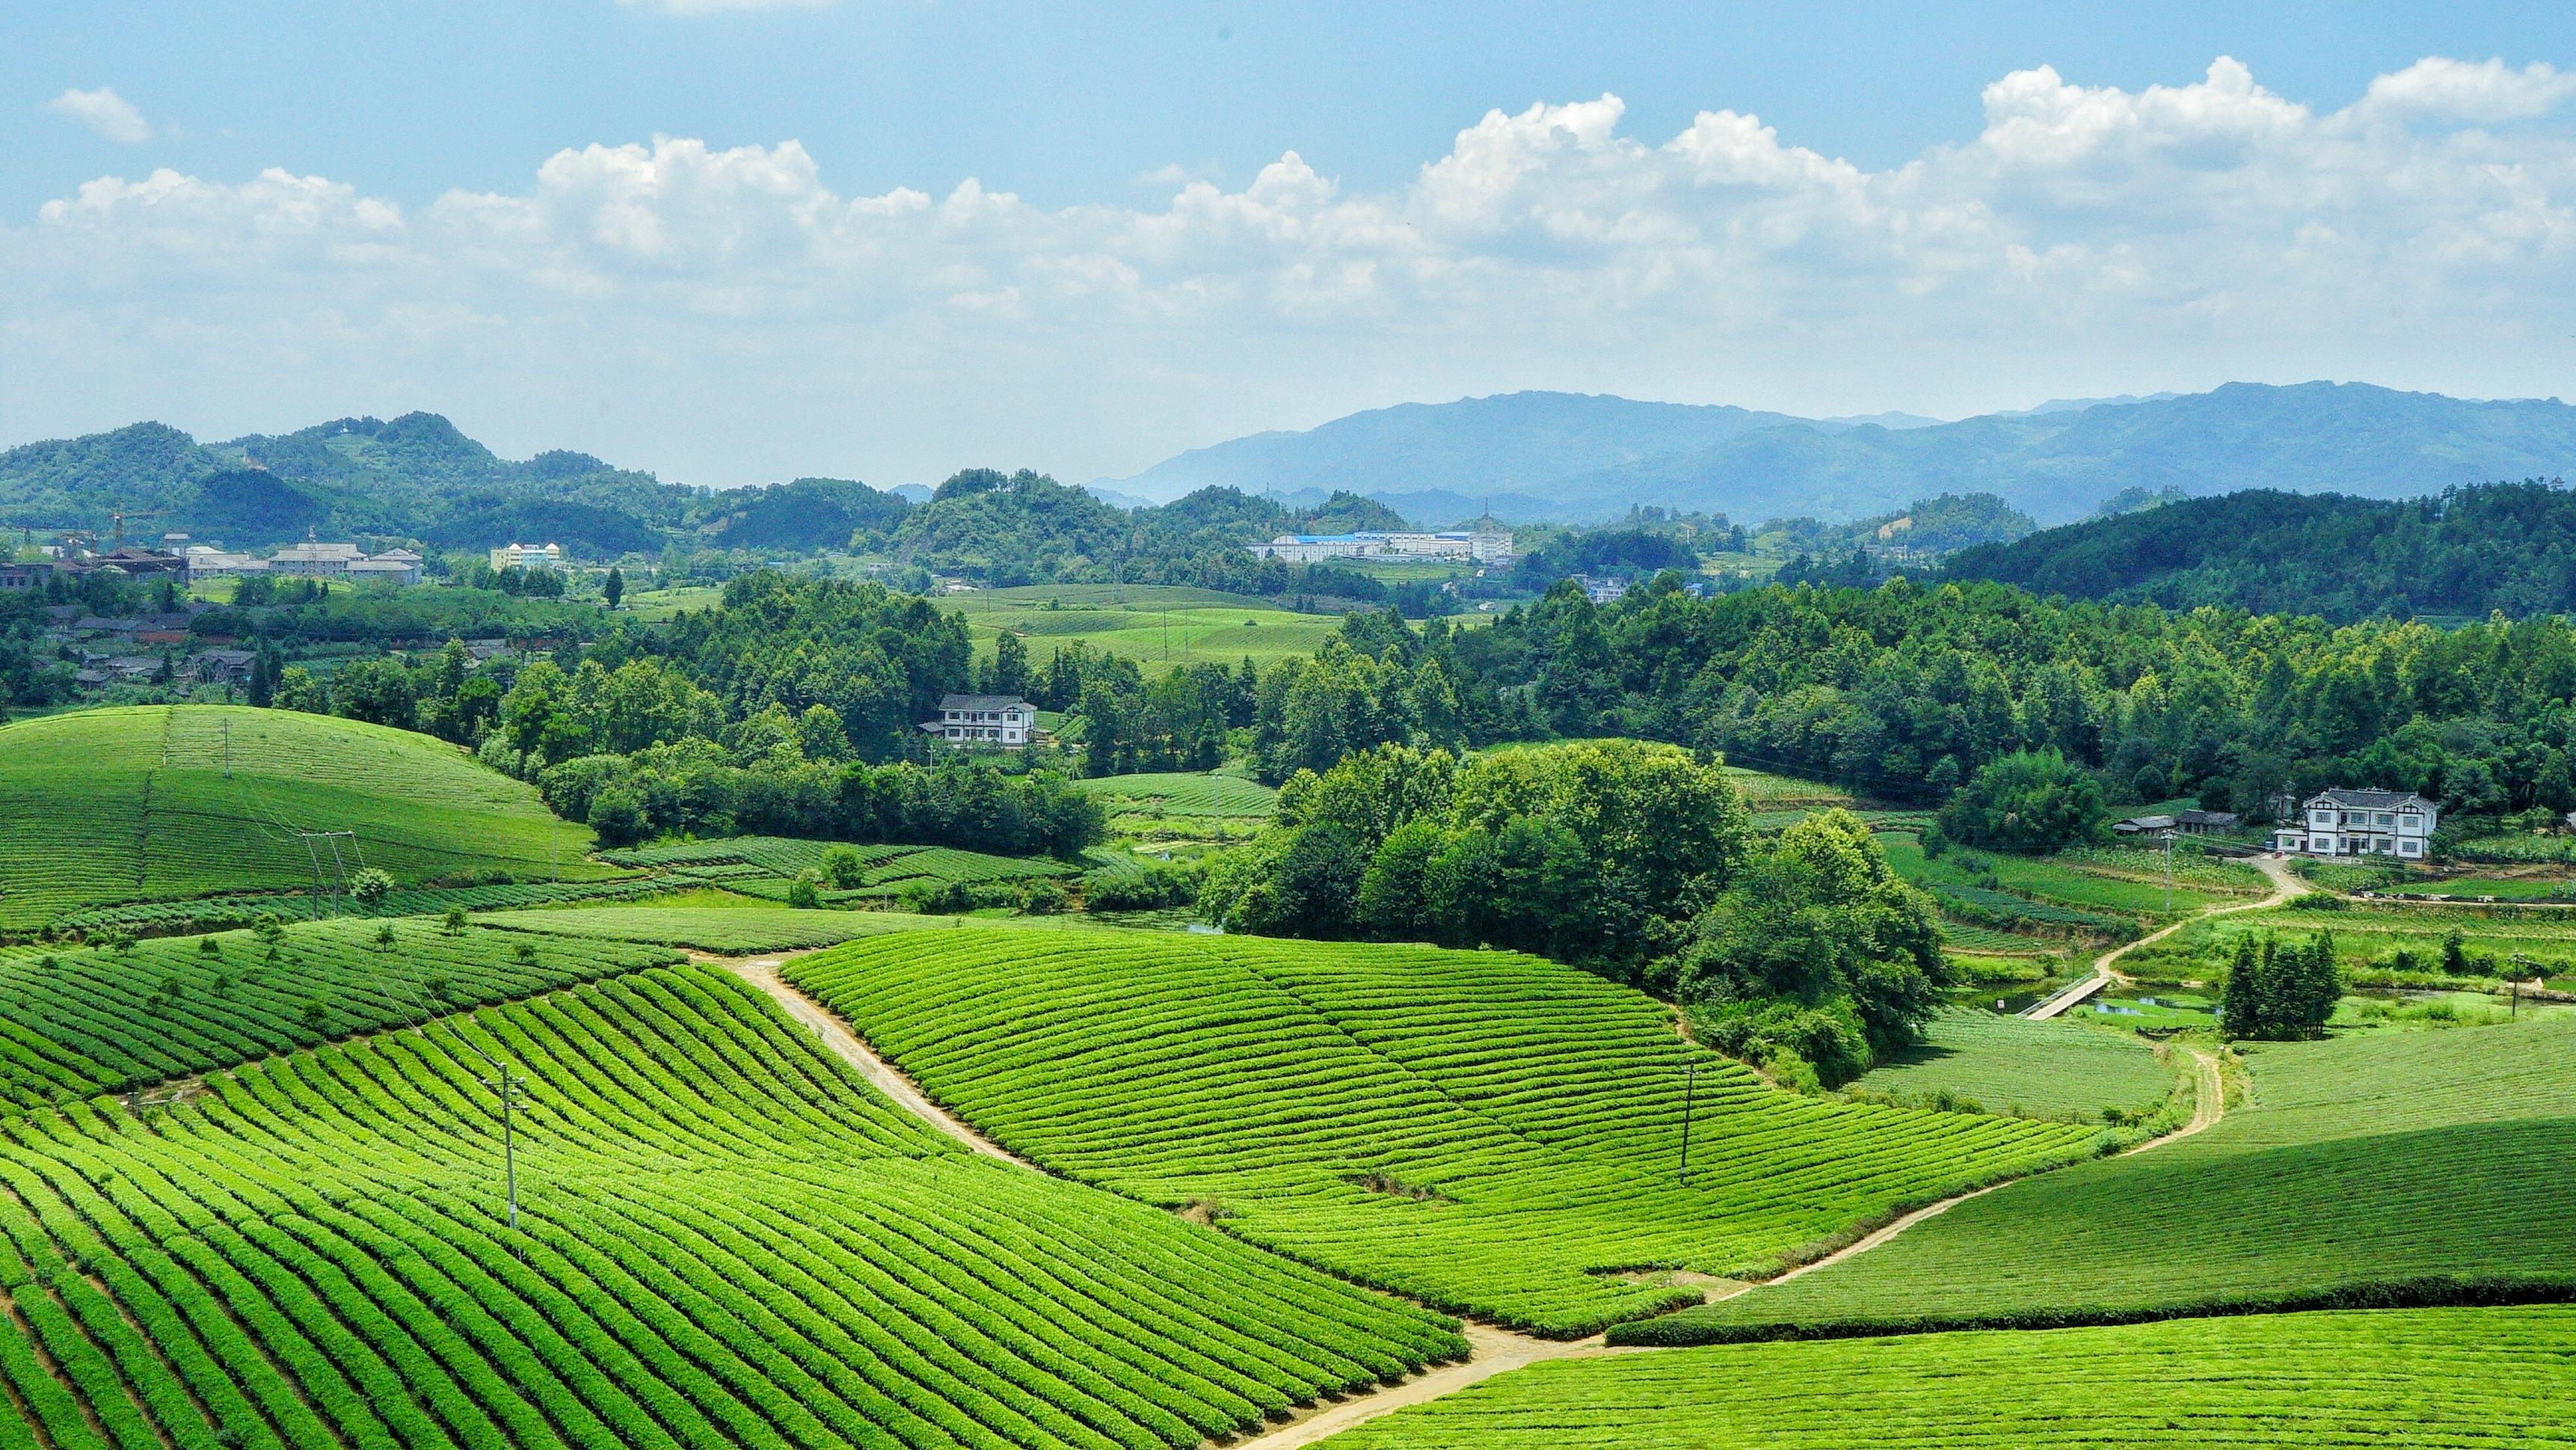 世界上面积最大的茶海 连片茶园超4万亩 不在江浙沪皖在云贵高原